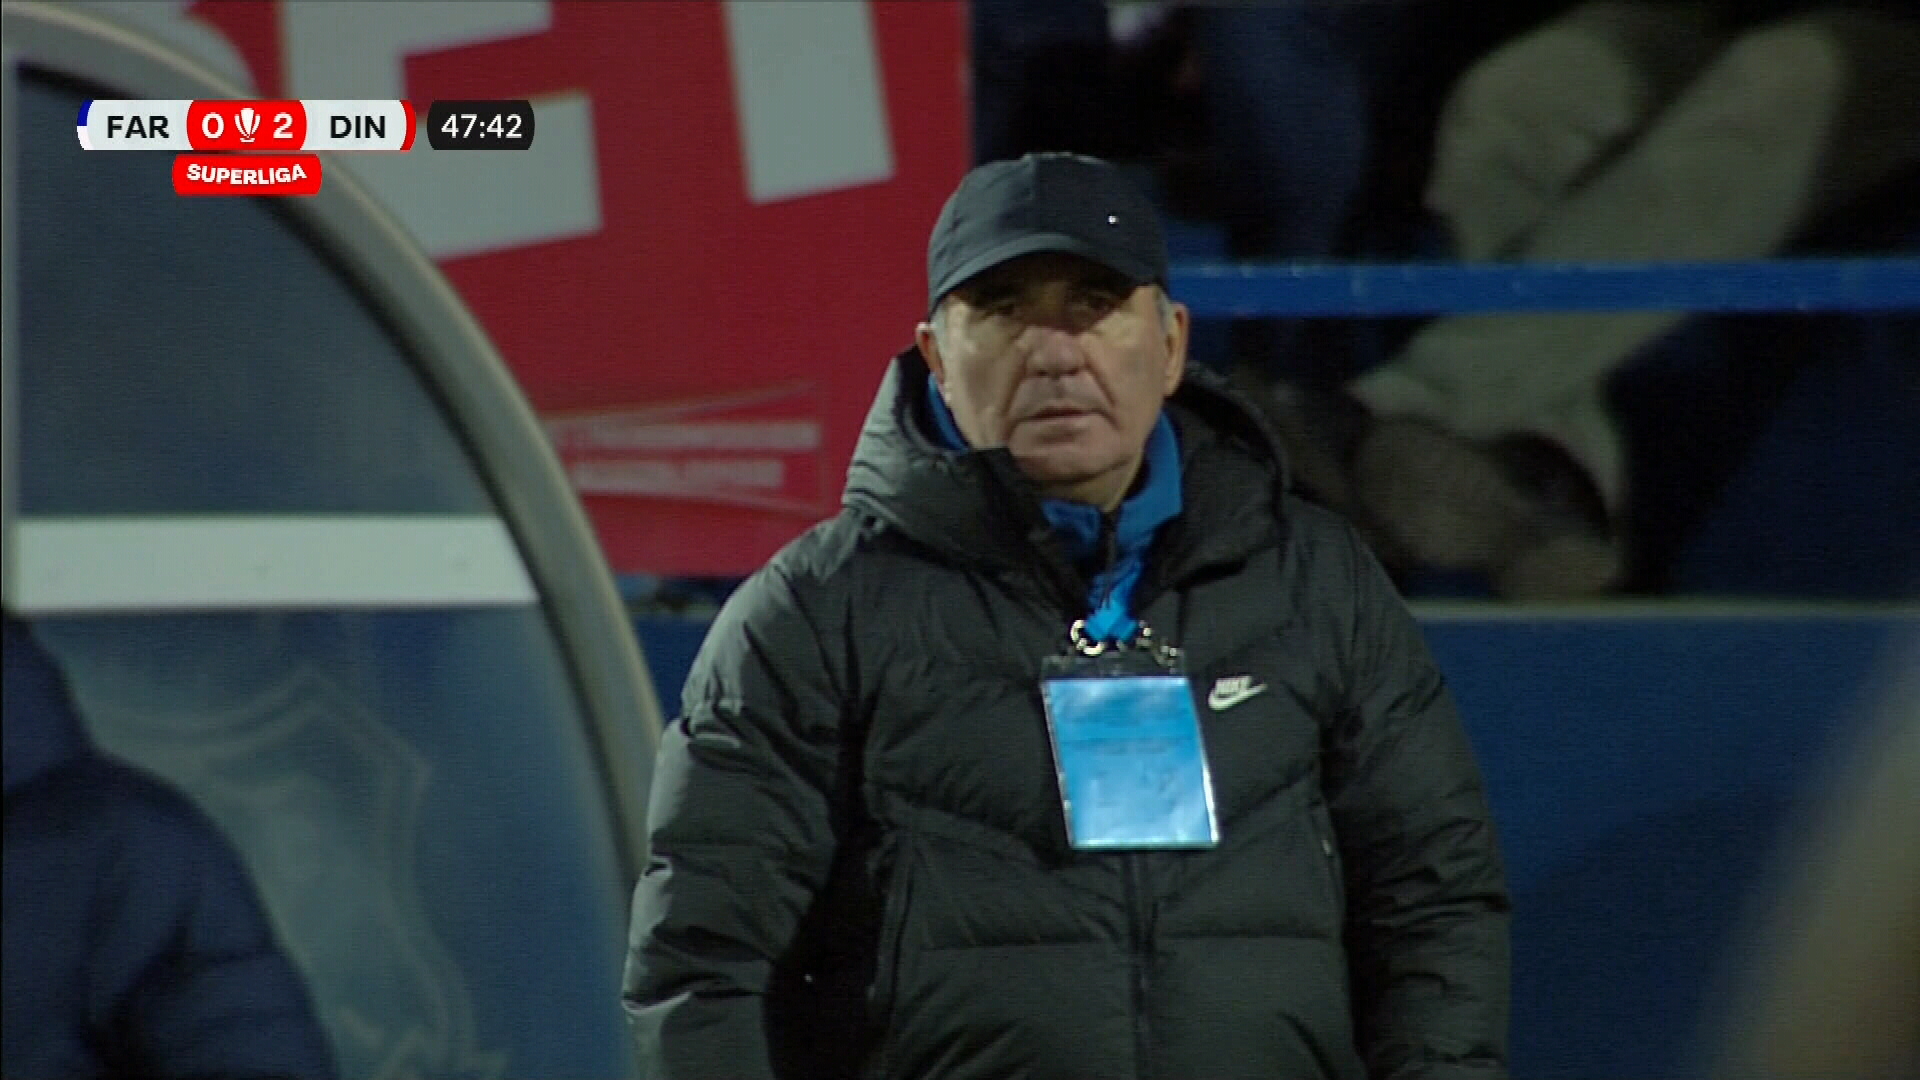 Gică Hagi, fără reacție după ce Dinamo a făcut 2-0 pe terenul Farului. Imaginile surprinse